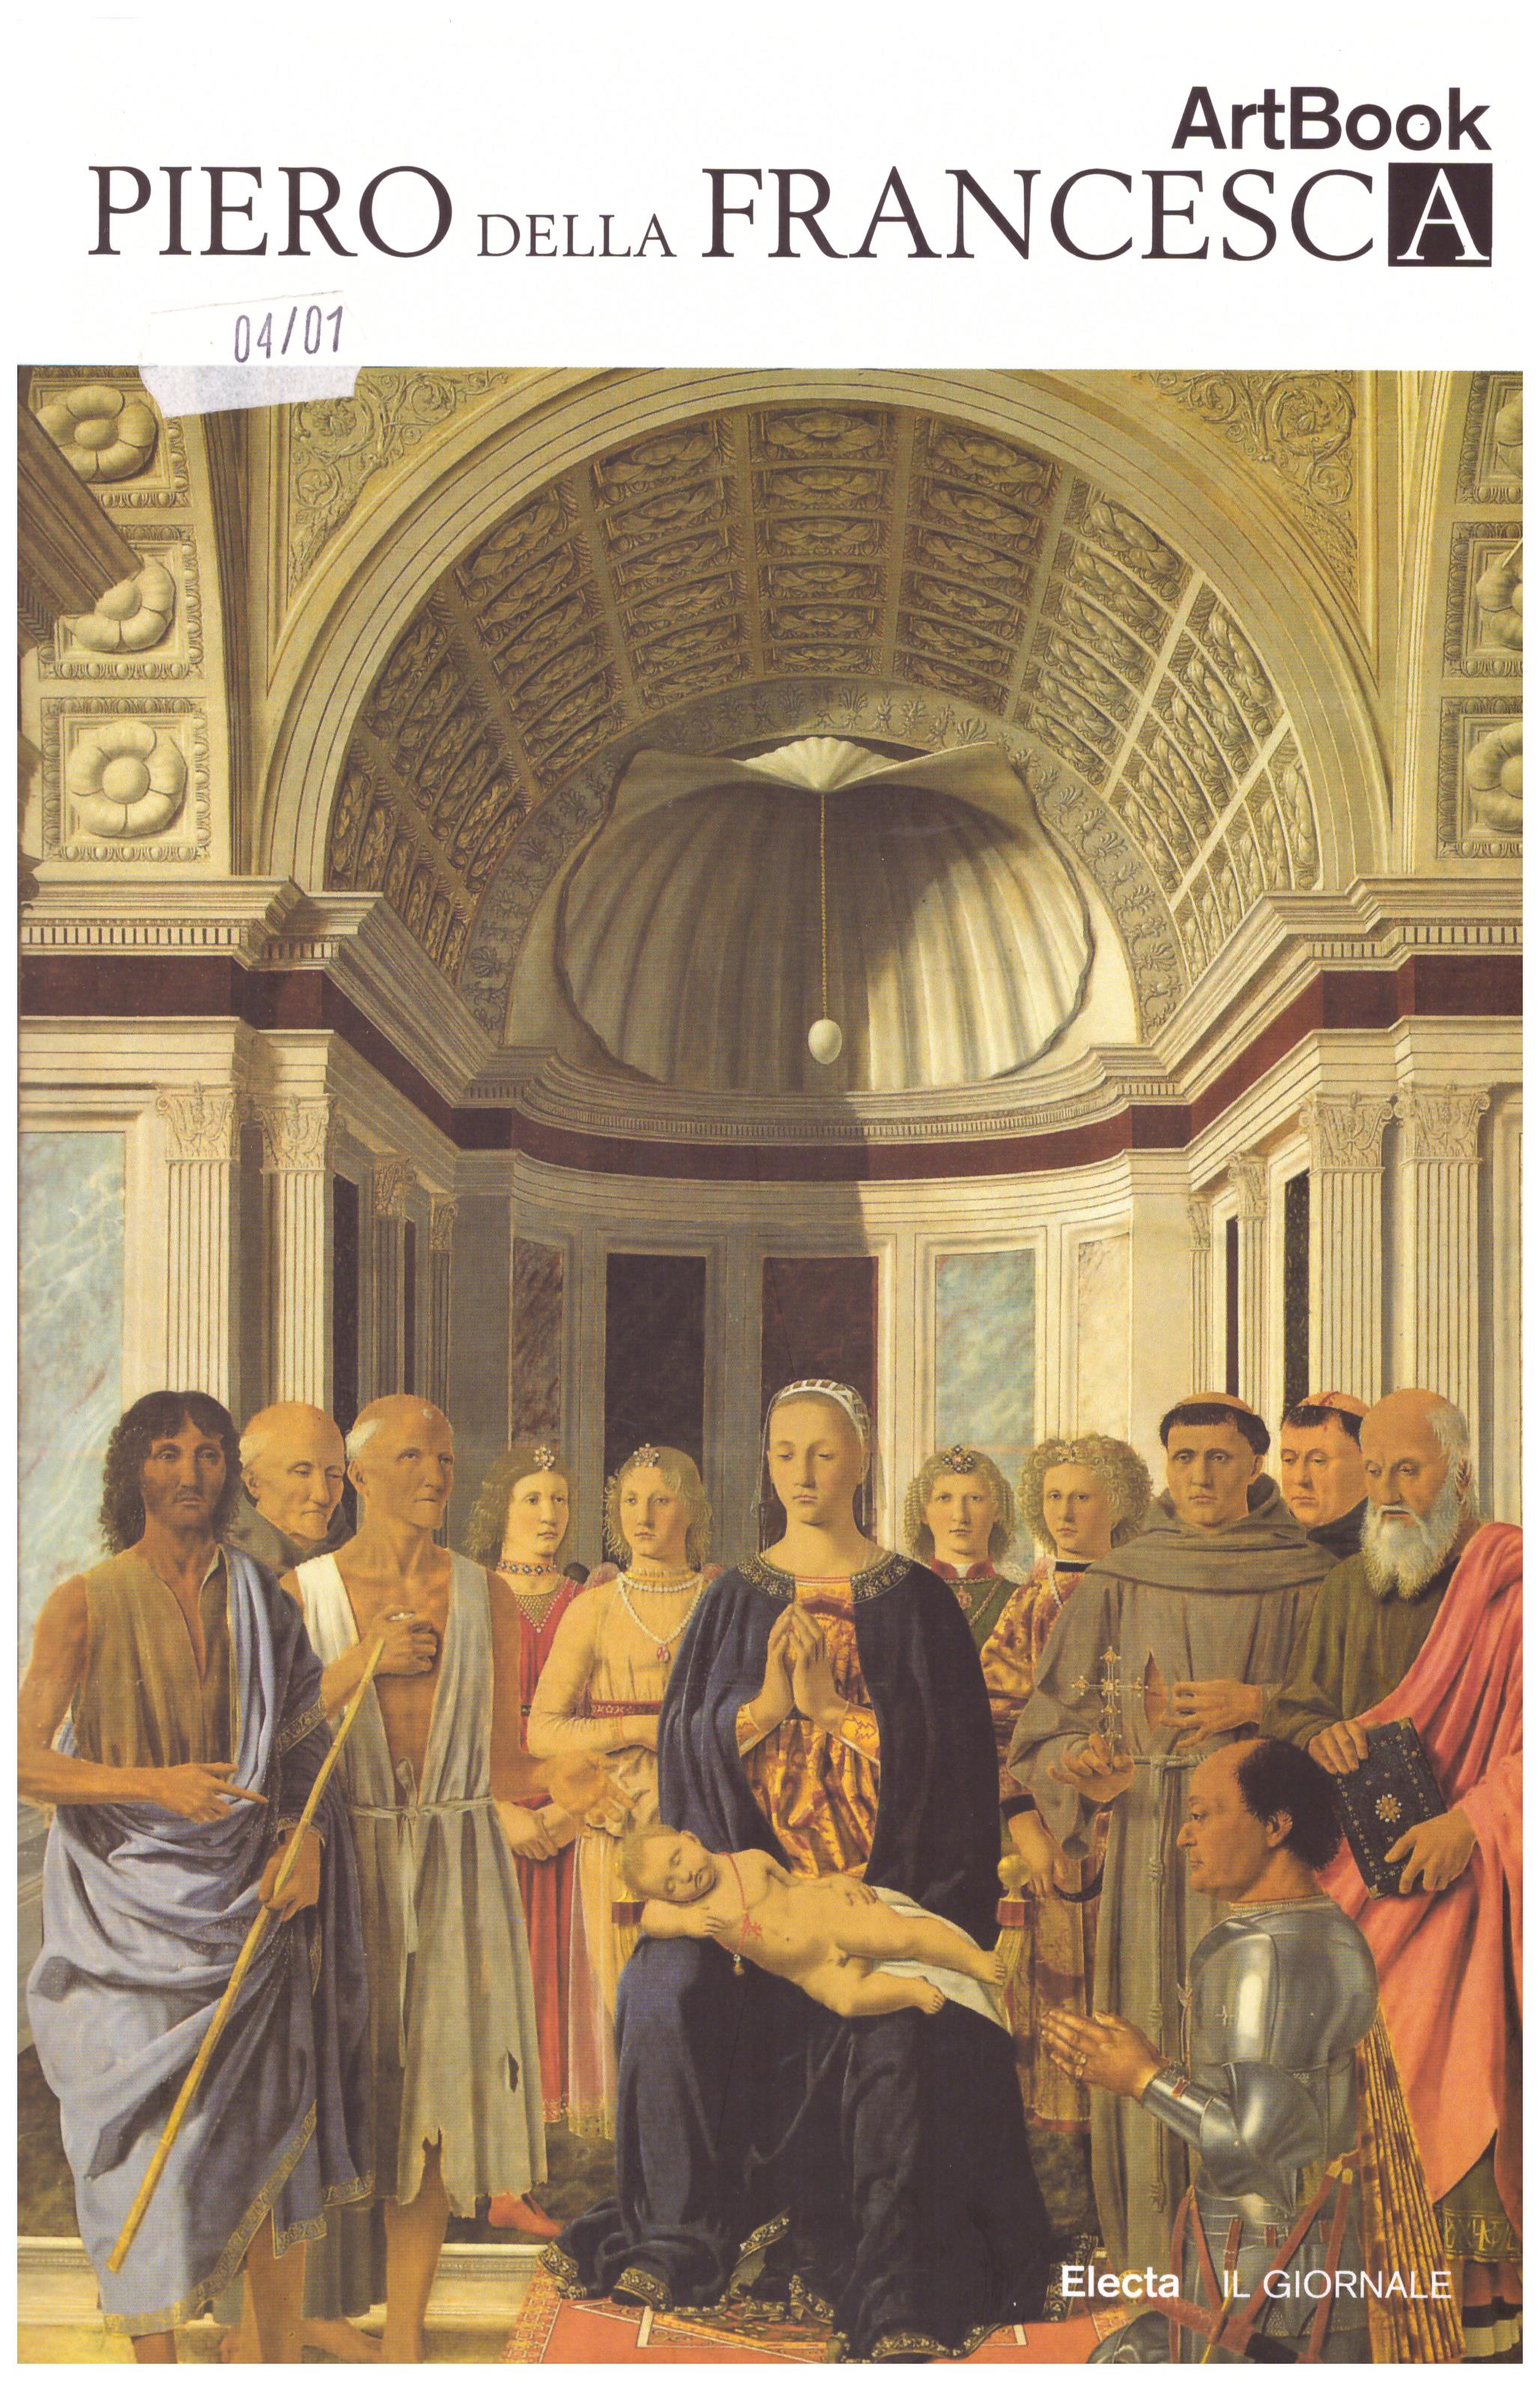 Piero della Francesca. ArtBook. N. 15.